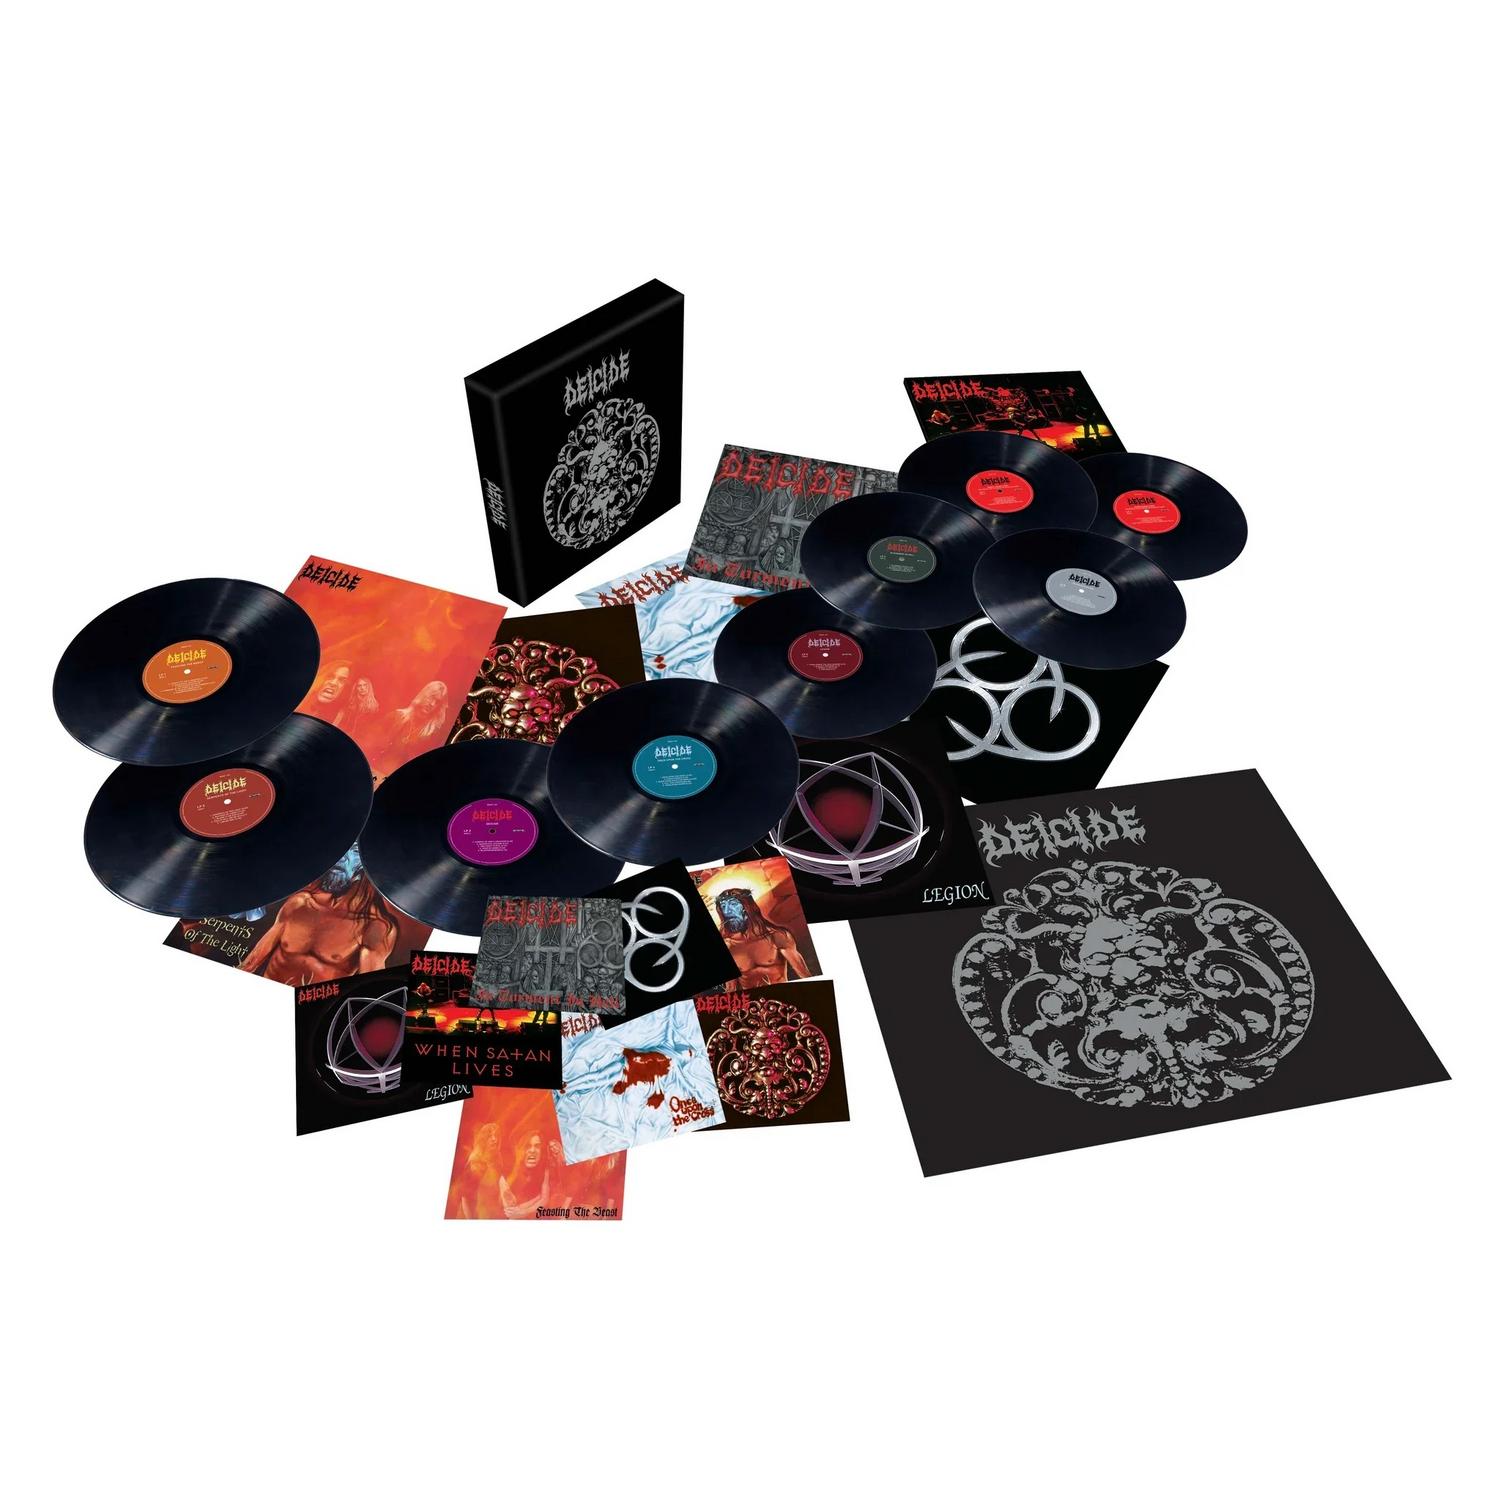 Deicide - Deicide (limited Box Set, 9 LP) - фото 2